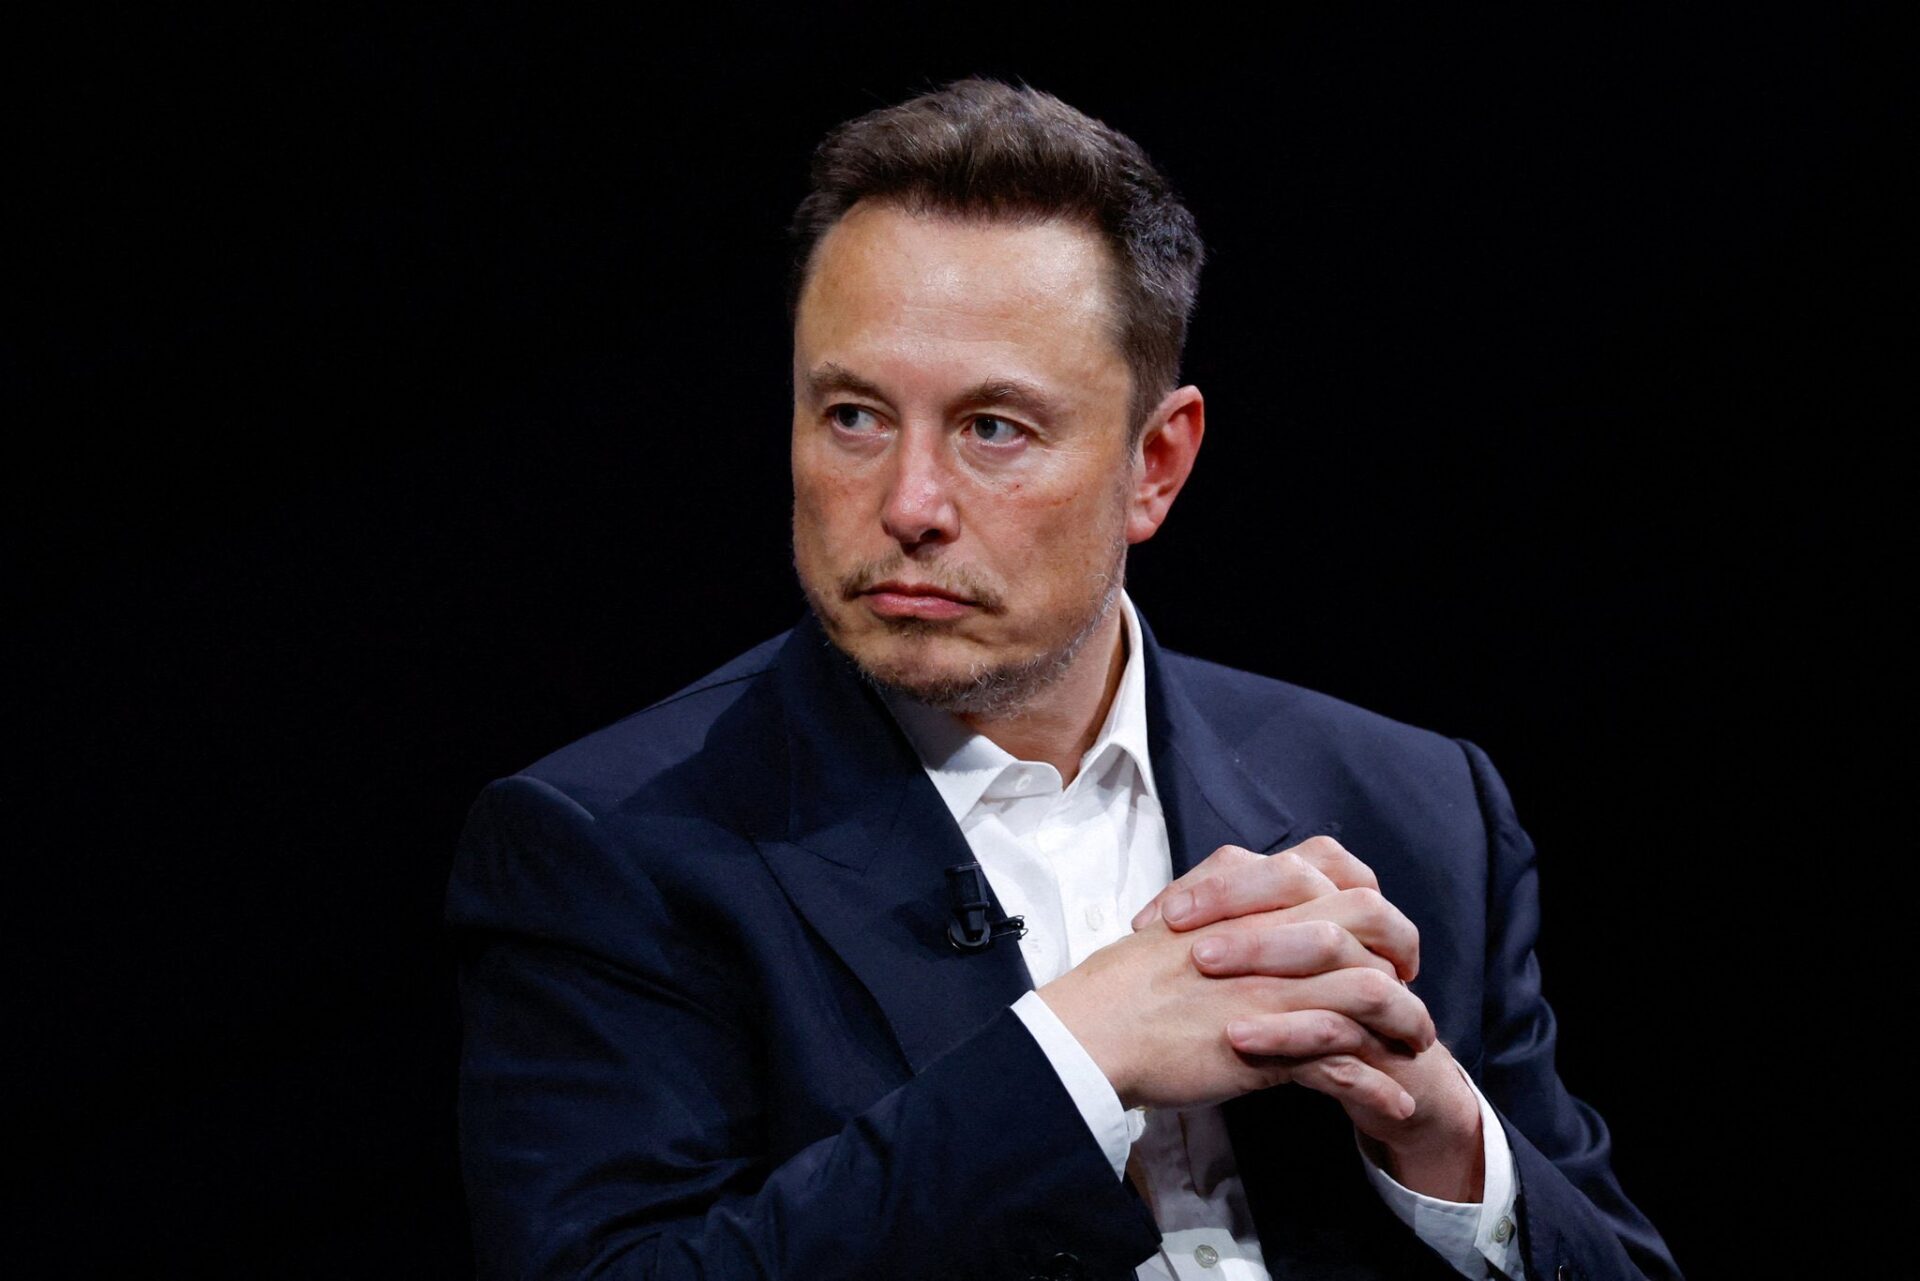 El dueño de Tesla y X, afirmó recientemente que ya no siente mucho interés en el mundo de las criptomonedas